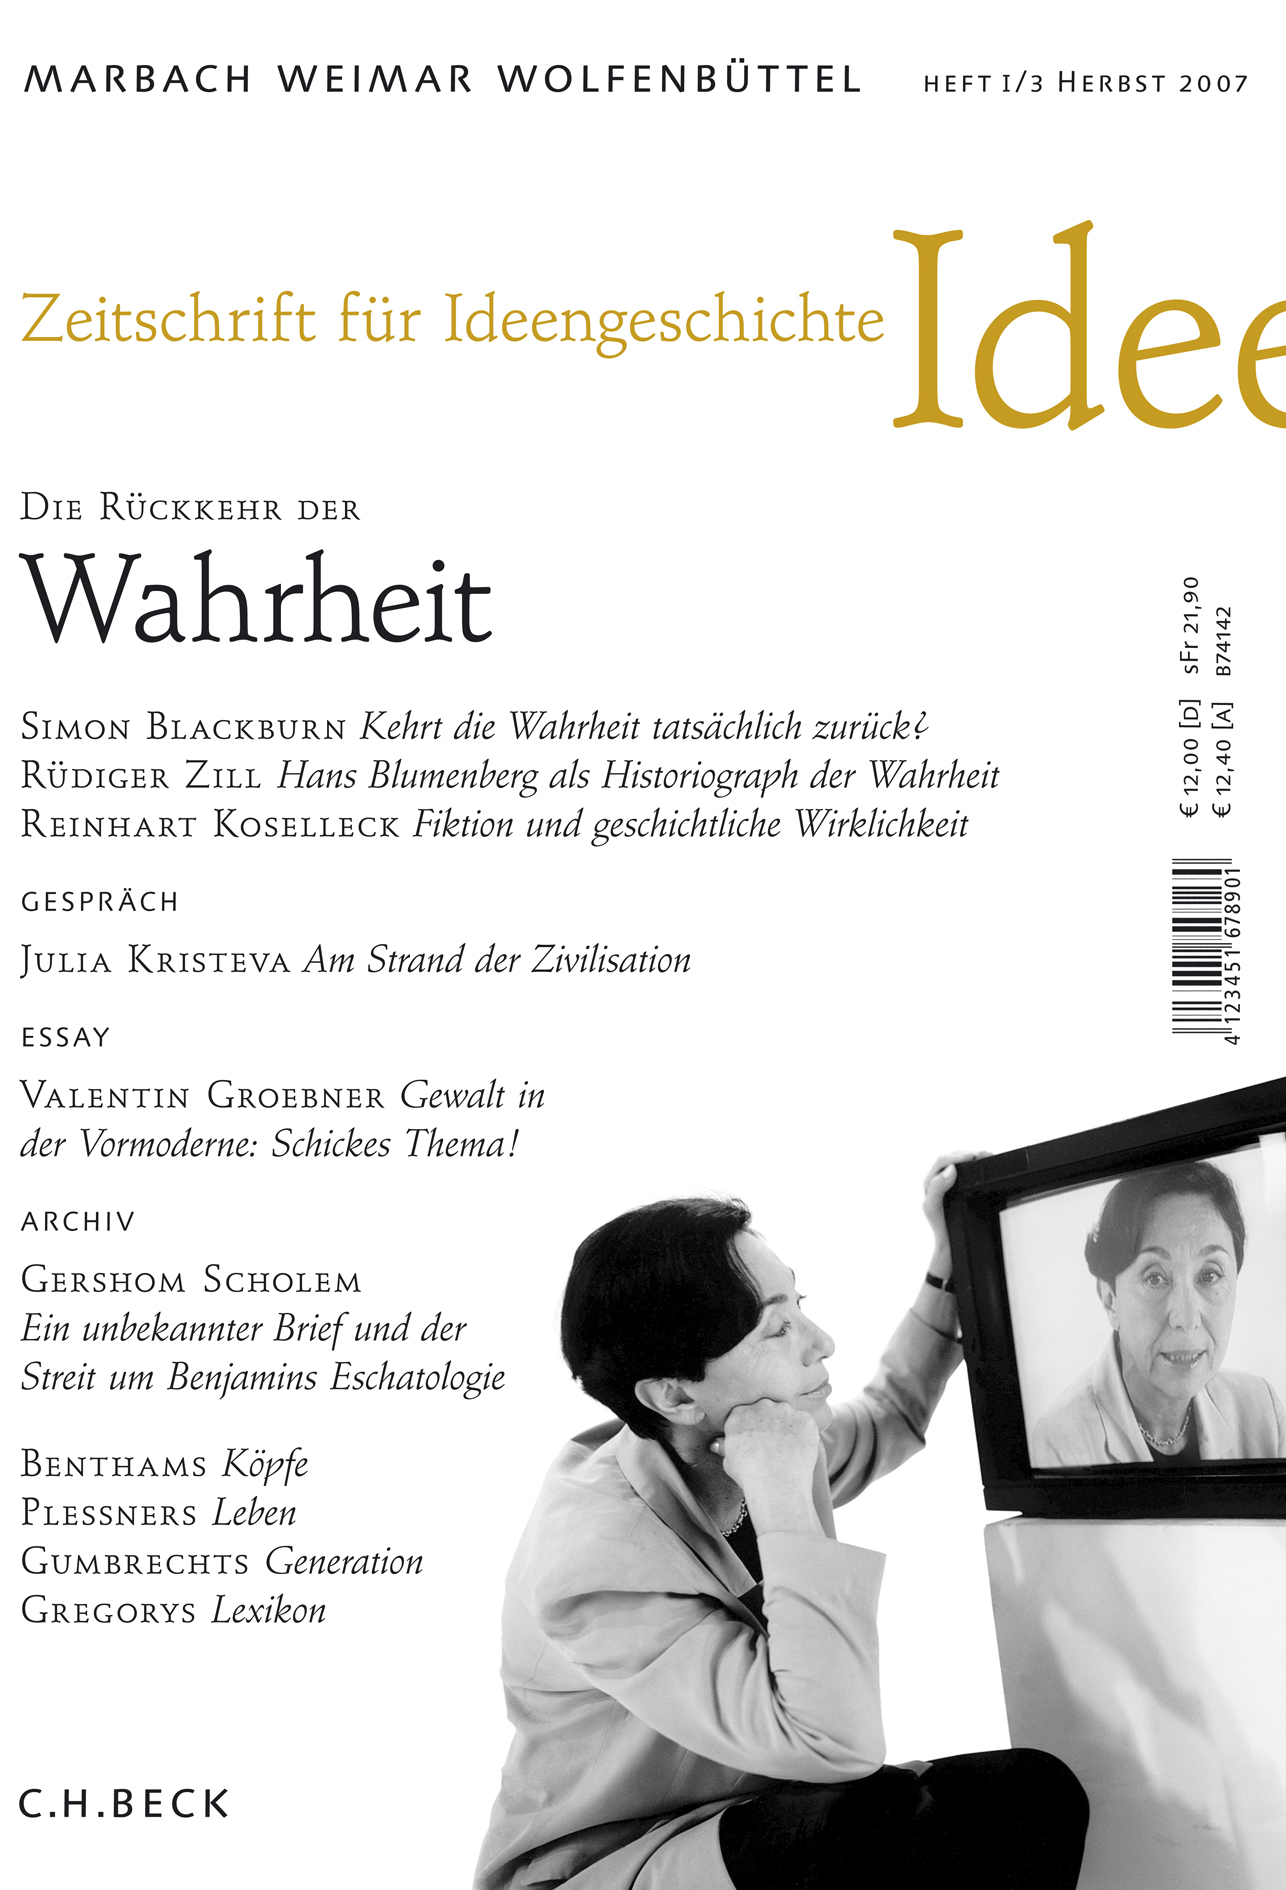 cover of Heft I/3 Herbst 2007